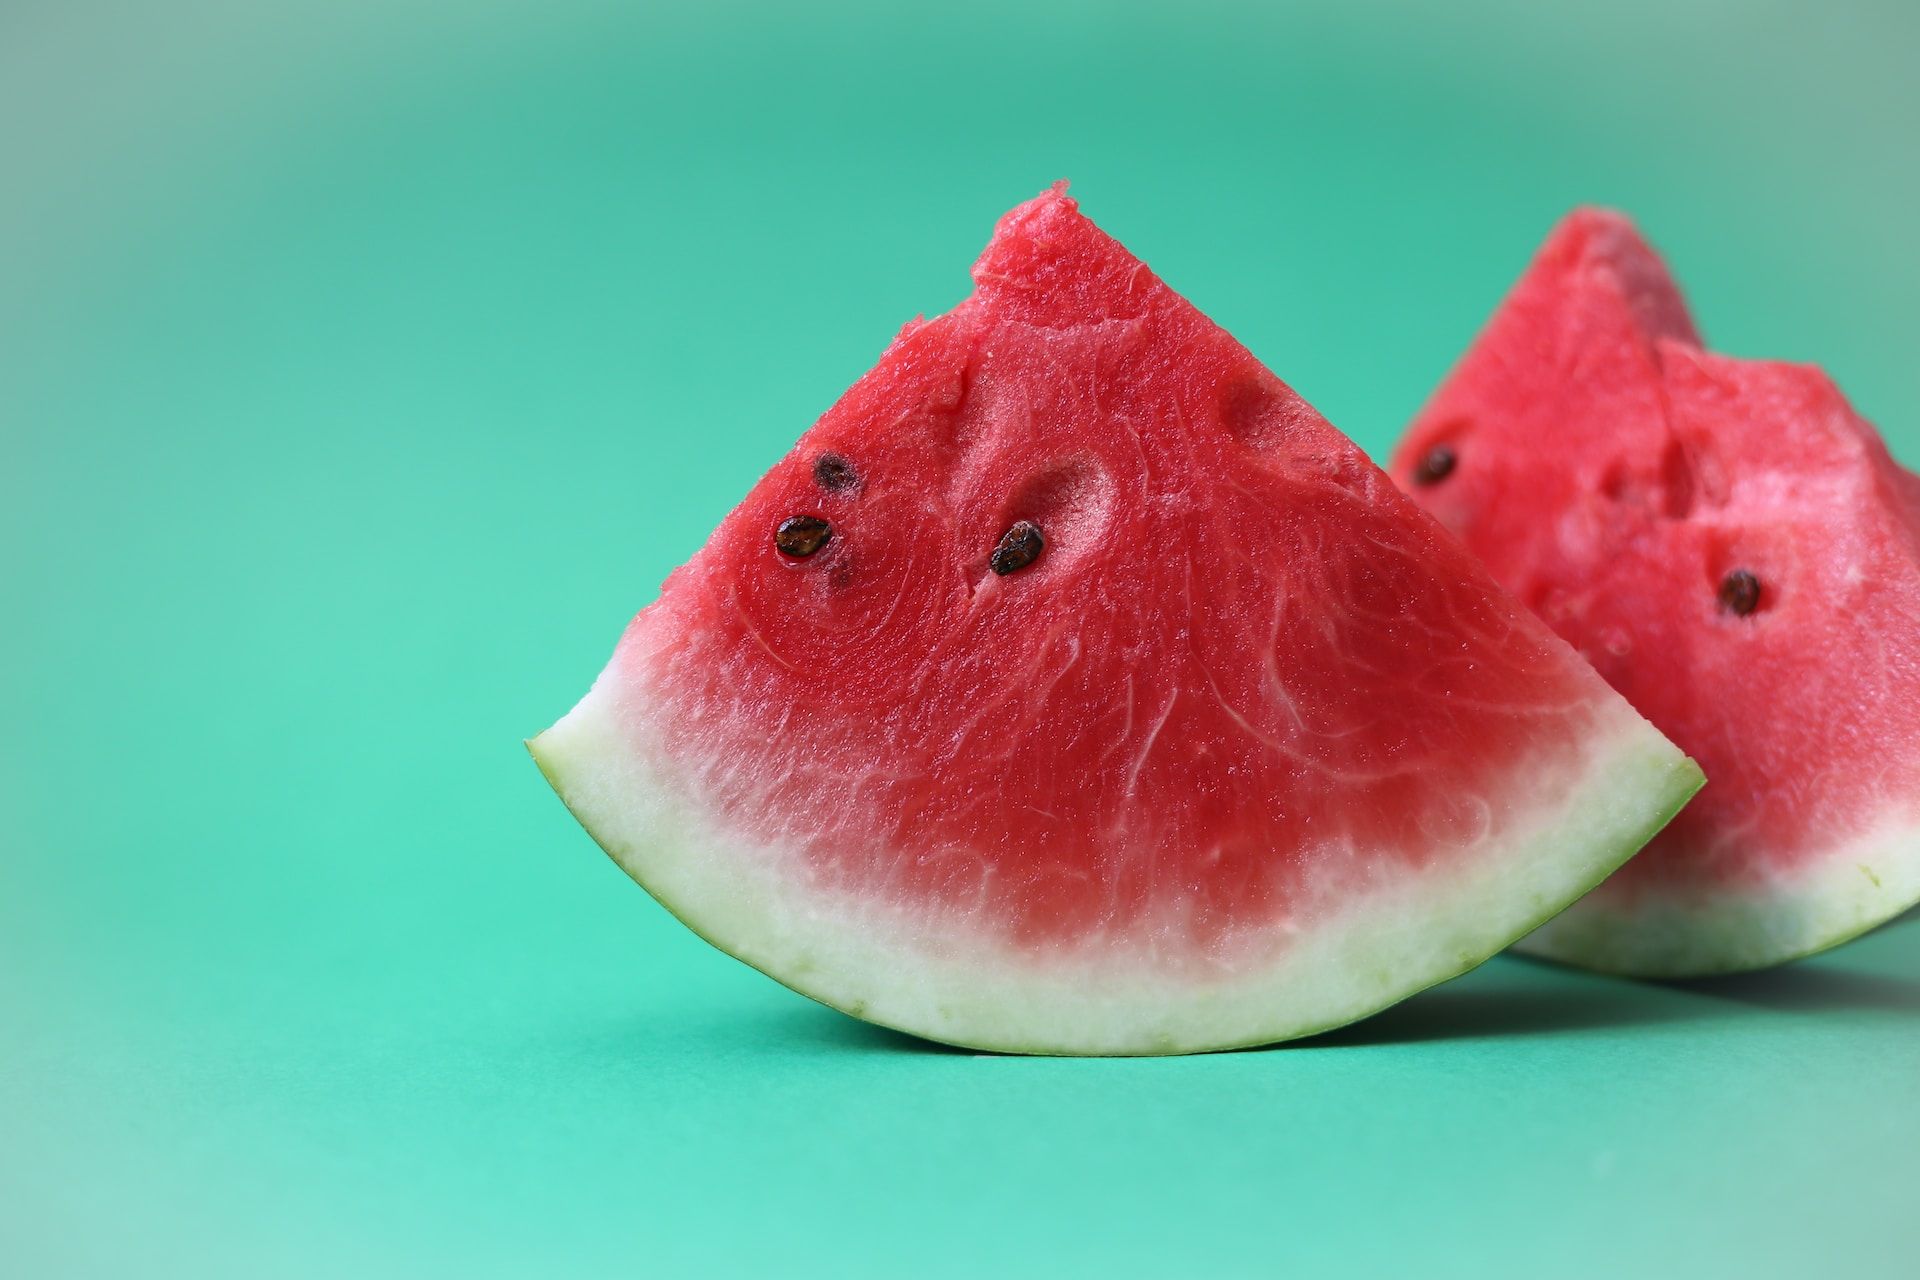 Buah semangka bagus untuk kesehatan kuli/